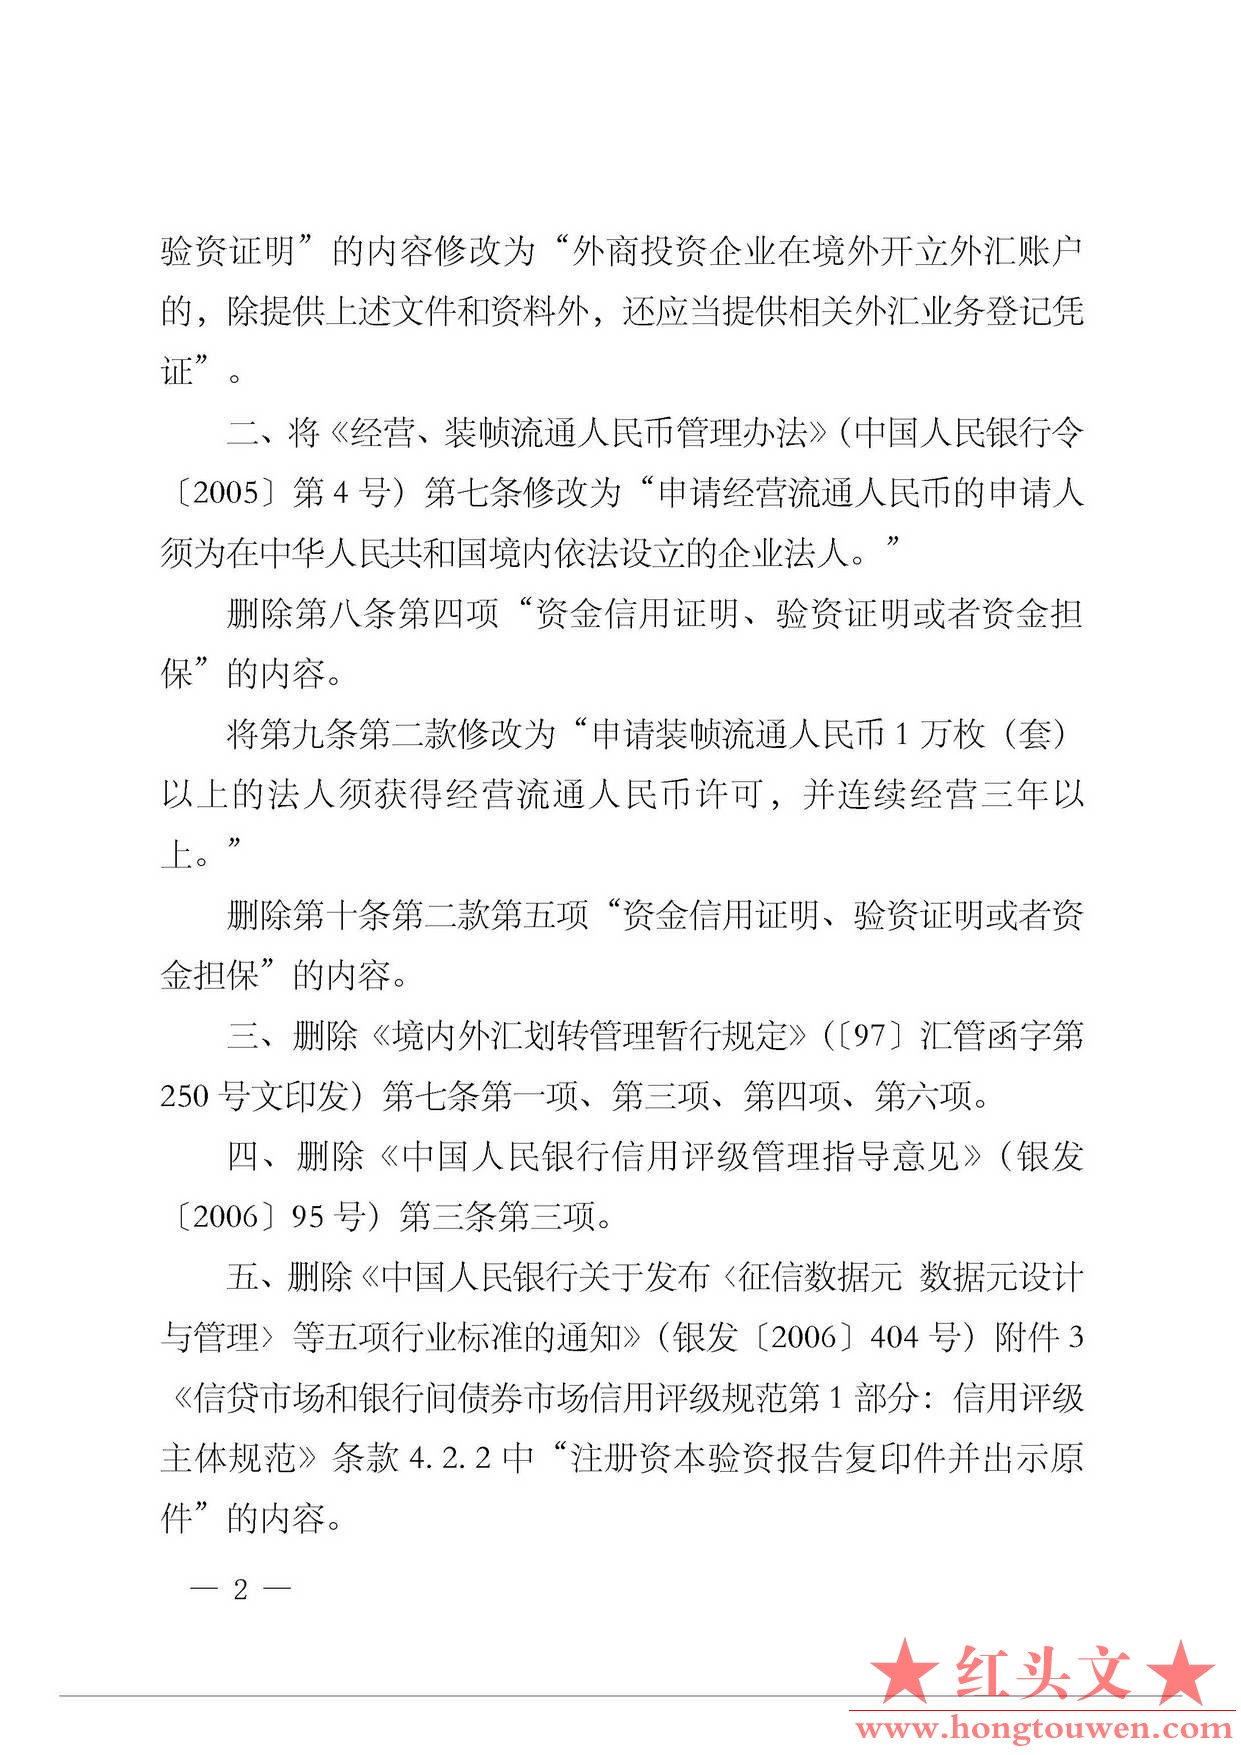 中国人民银行公告[2015]12号-发布规章和规范性文件清理结果_页面_2.jpg.jpg